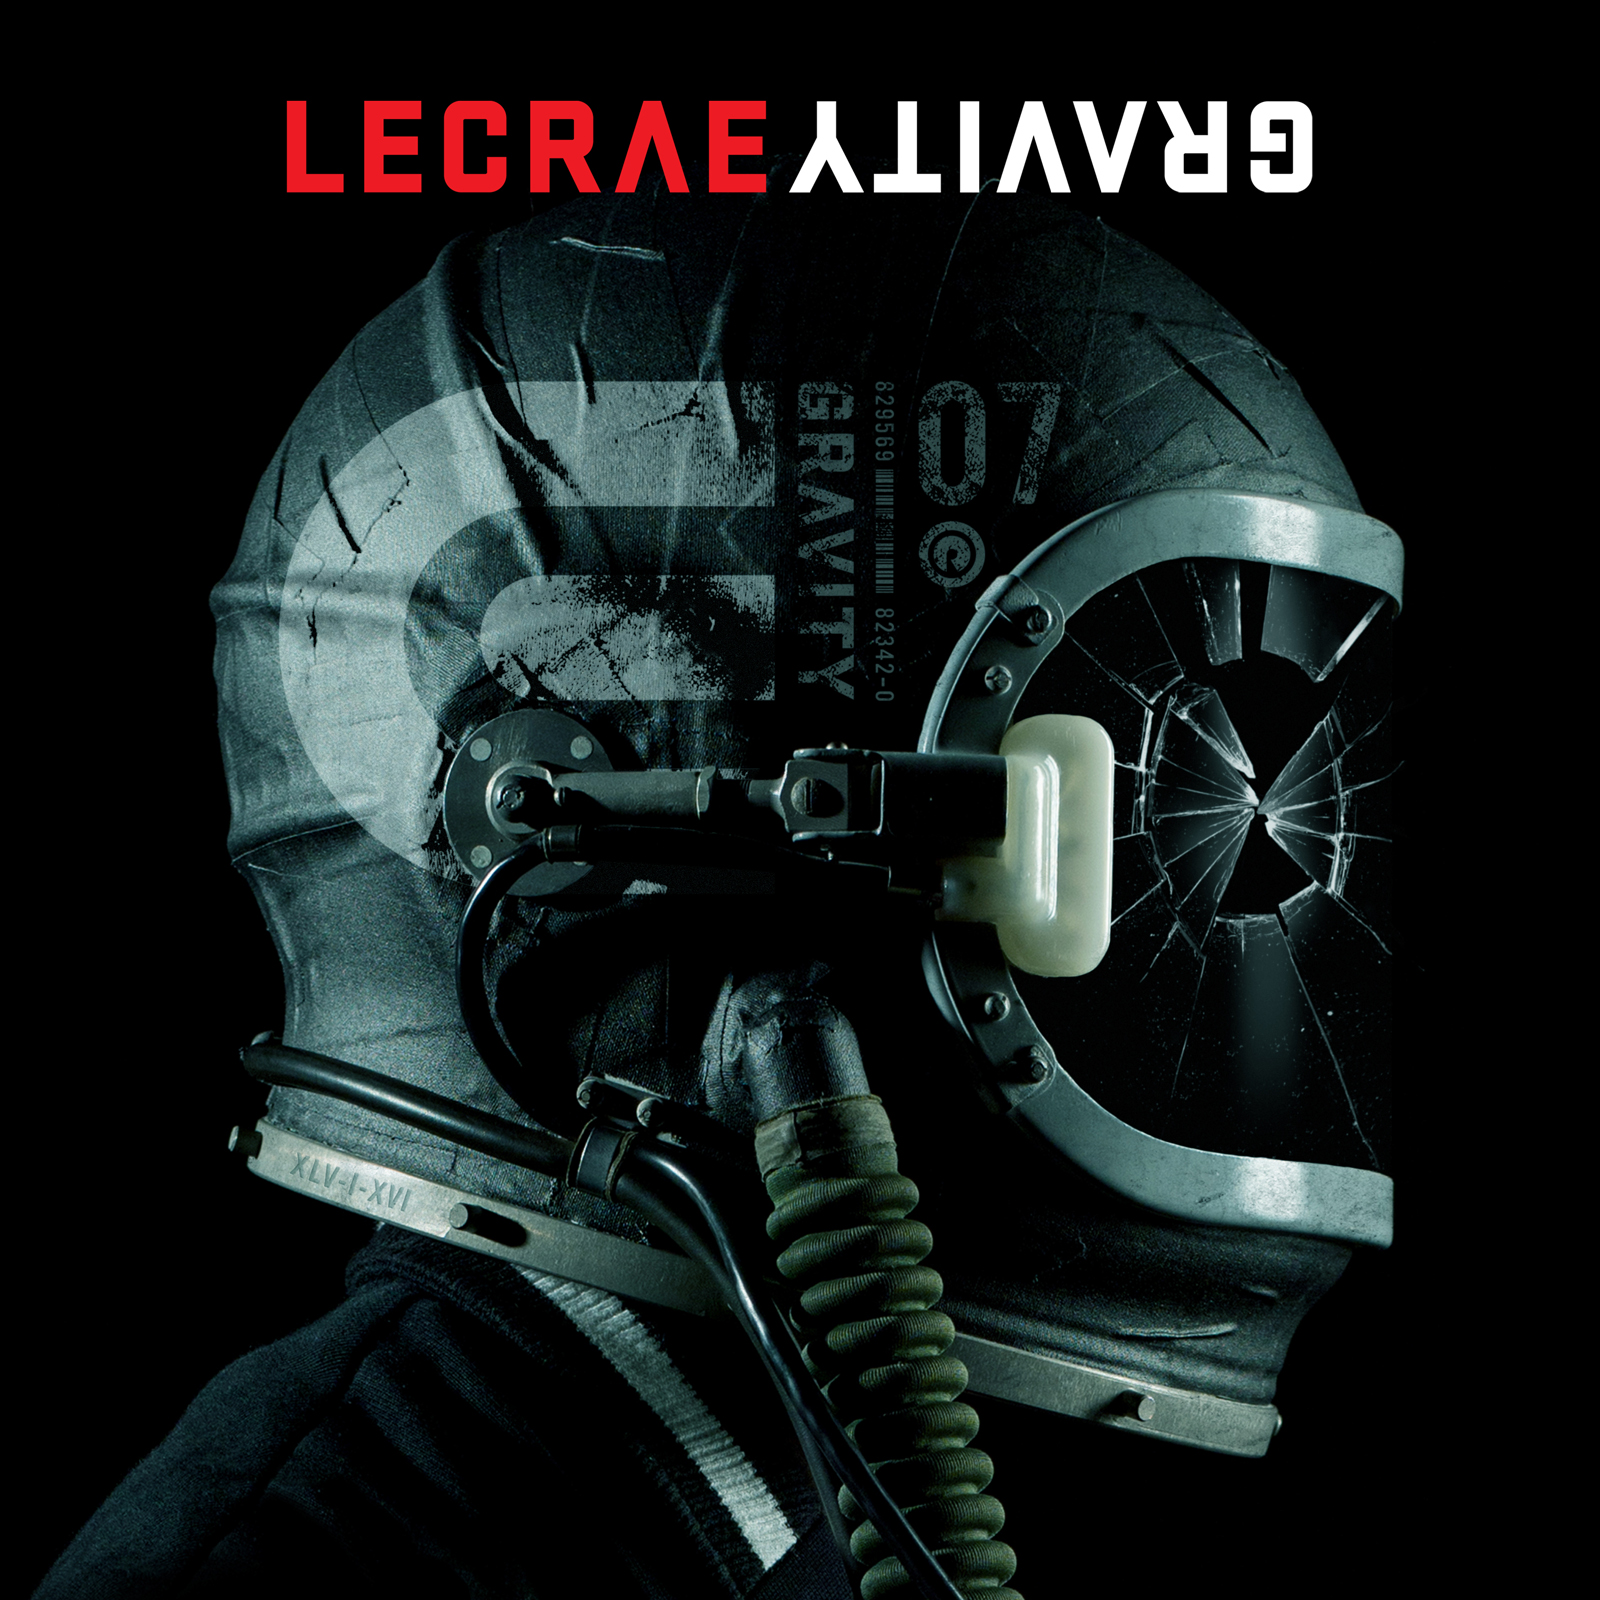 Find Lecrae’s “Gravity” In a Store Near You!